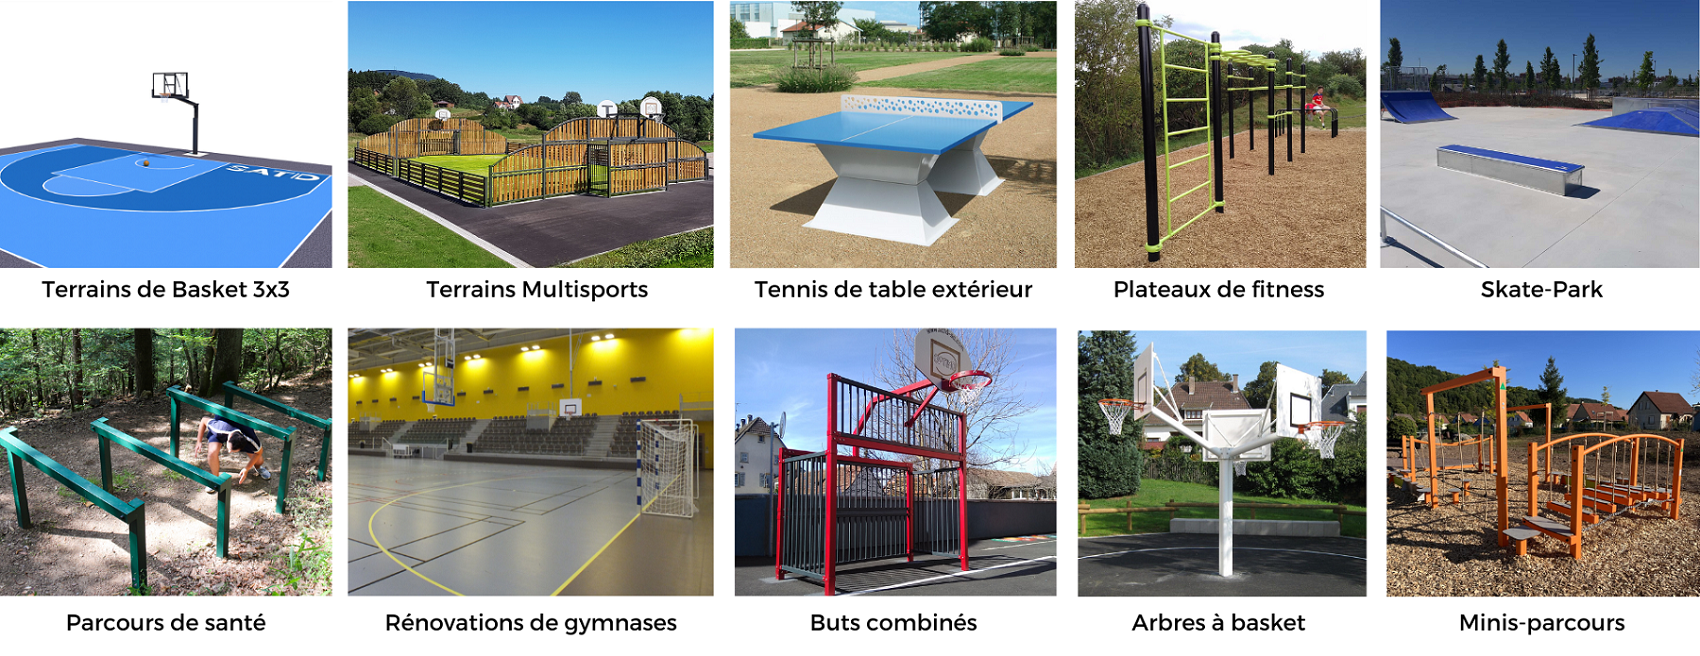 Equipements sportifs extérieurs : terrain de basket 3x3, tennis de table, aire de fitness, skate-park, 